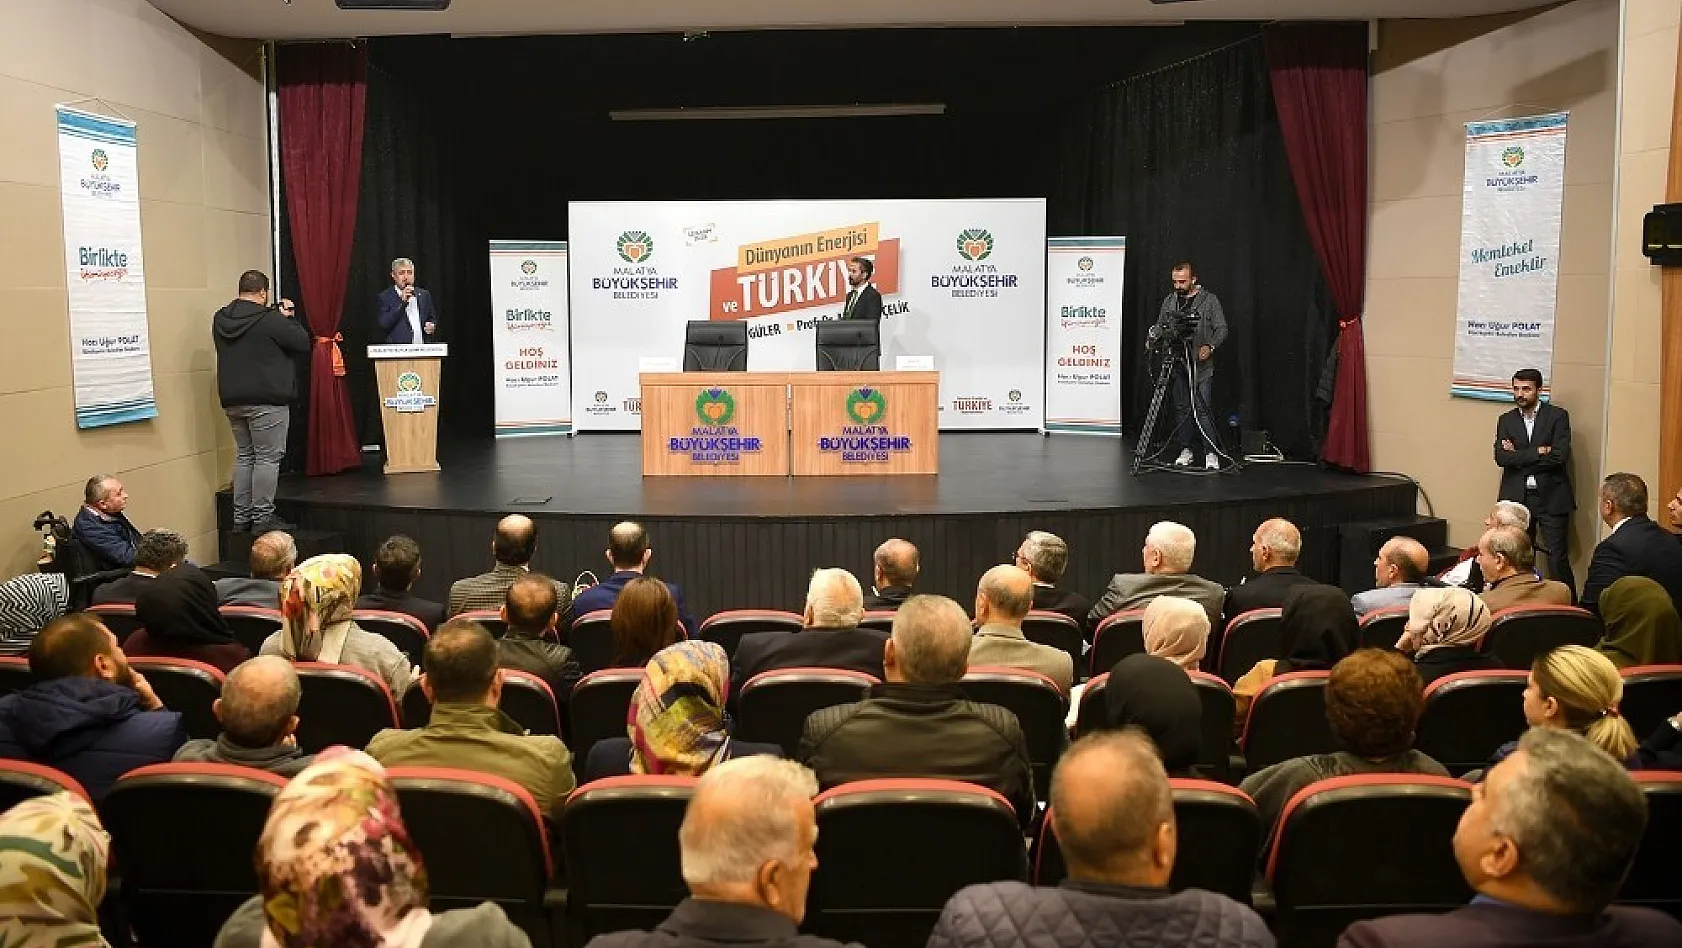 Dünyanın enerjisi ve Türkiye konulu konferans düzenlendi 